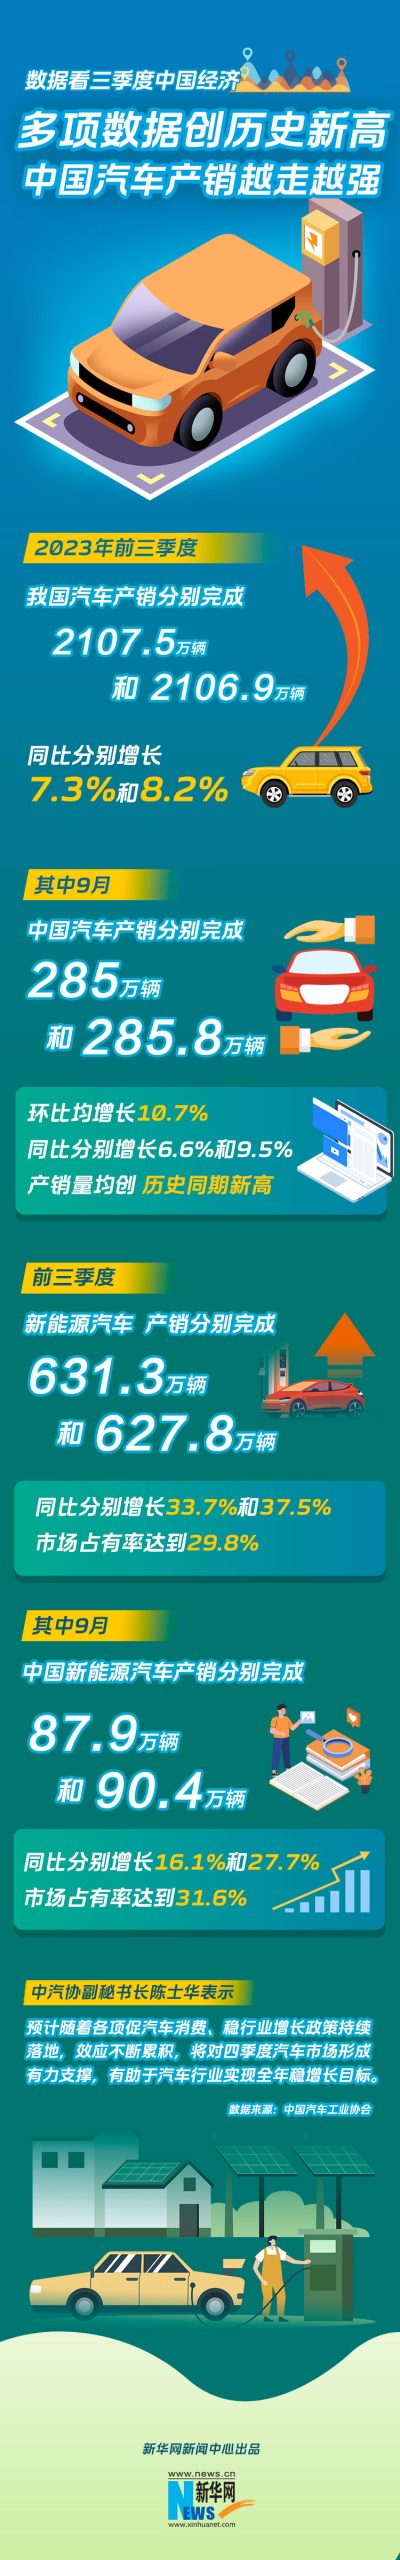 多项数据创历史新高——中国汽车产销越走越强-精研拍拍网